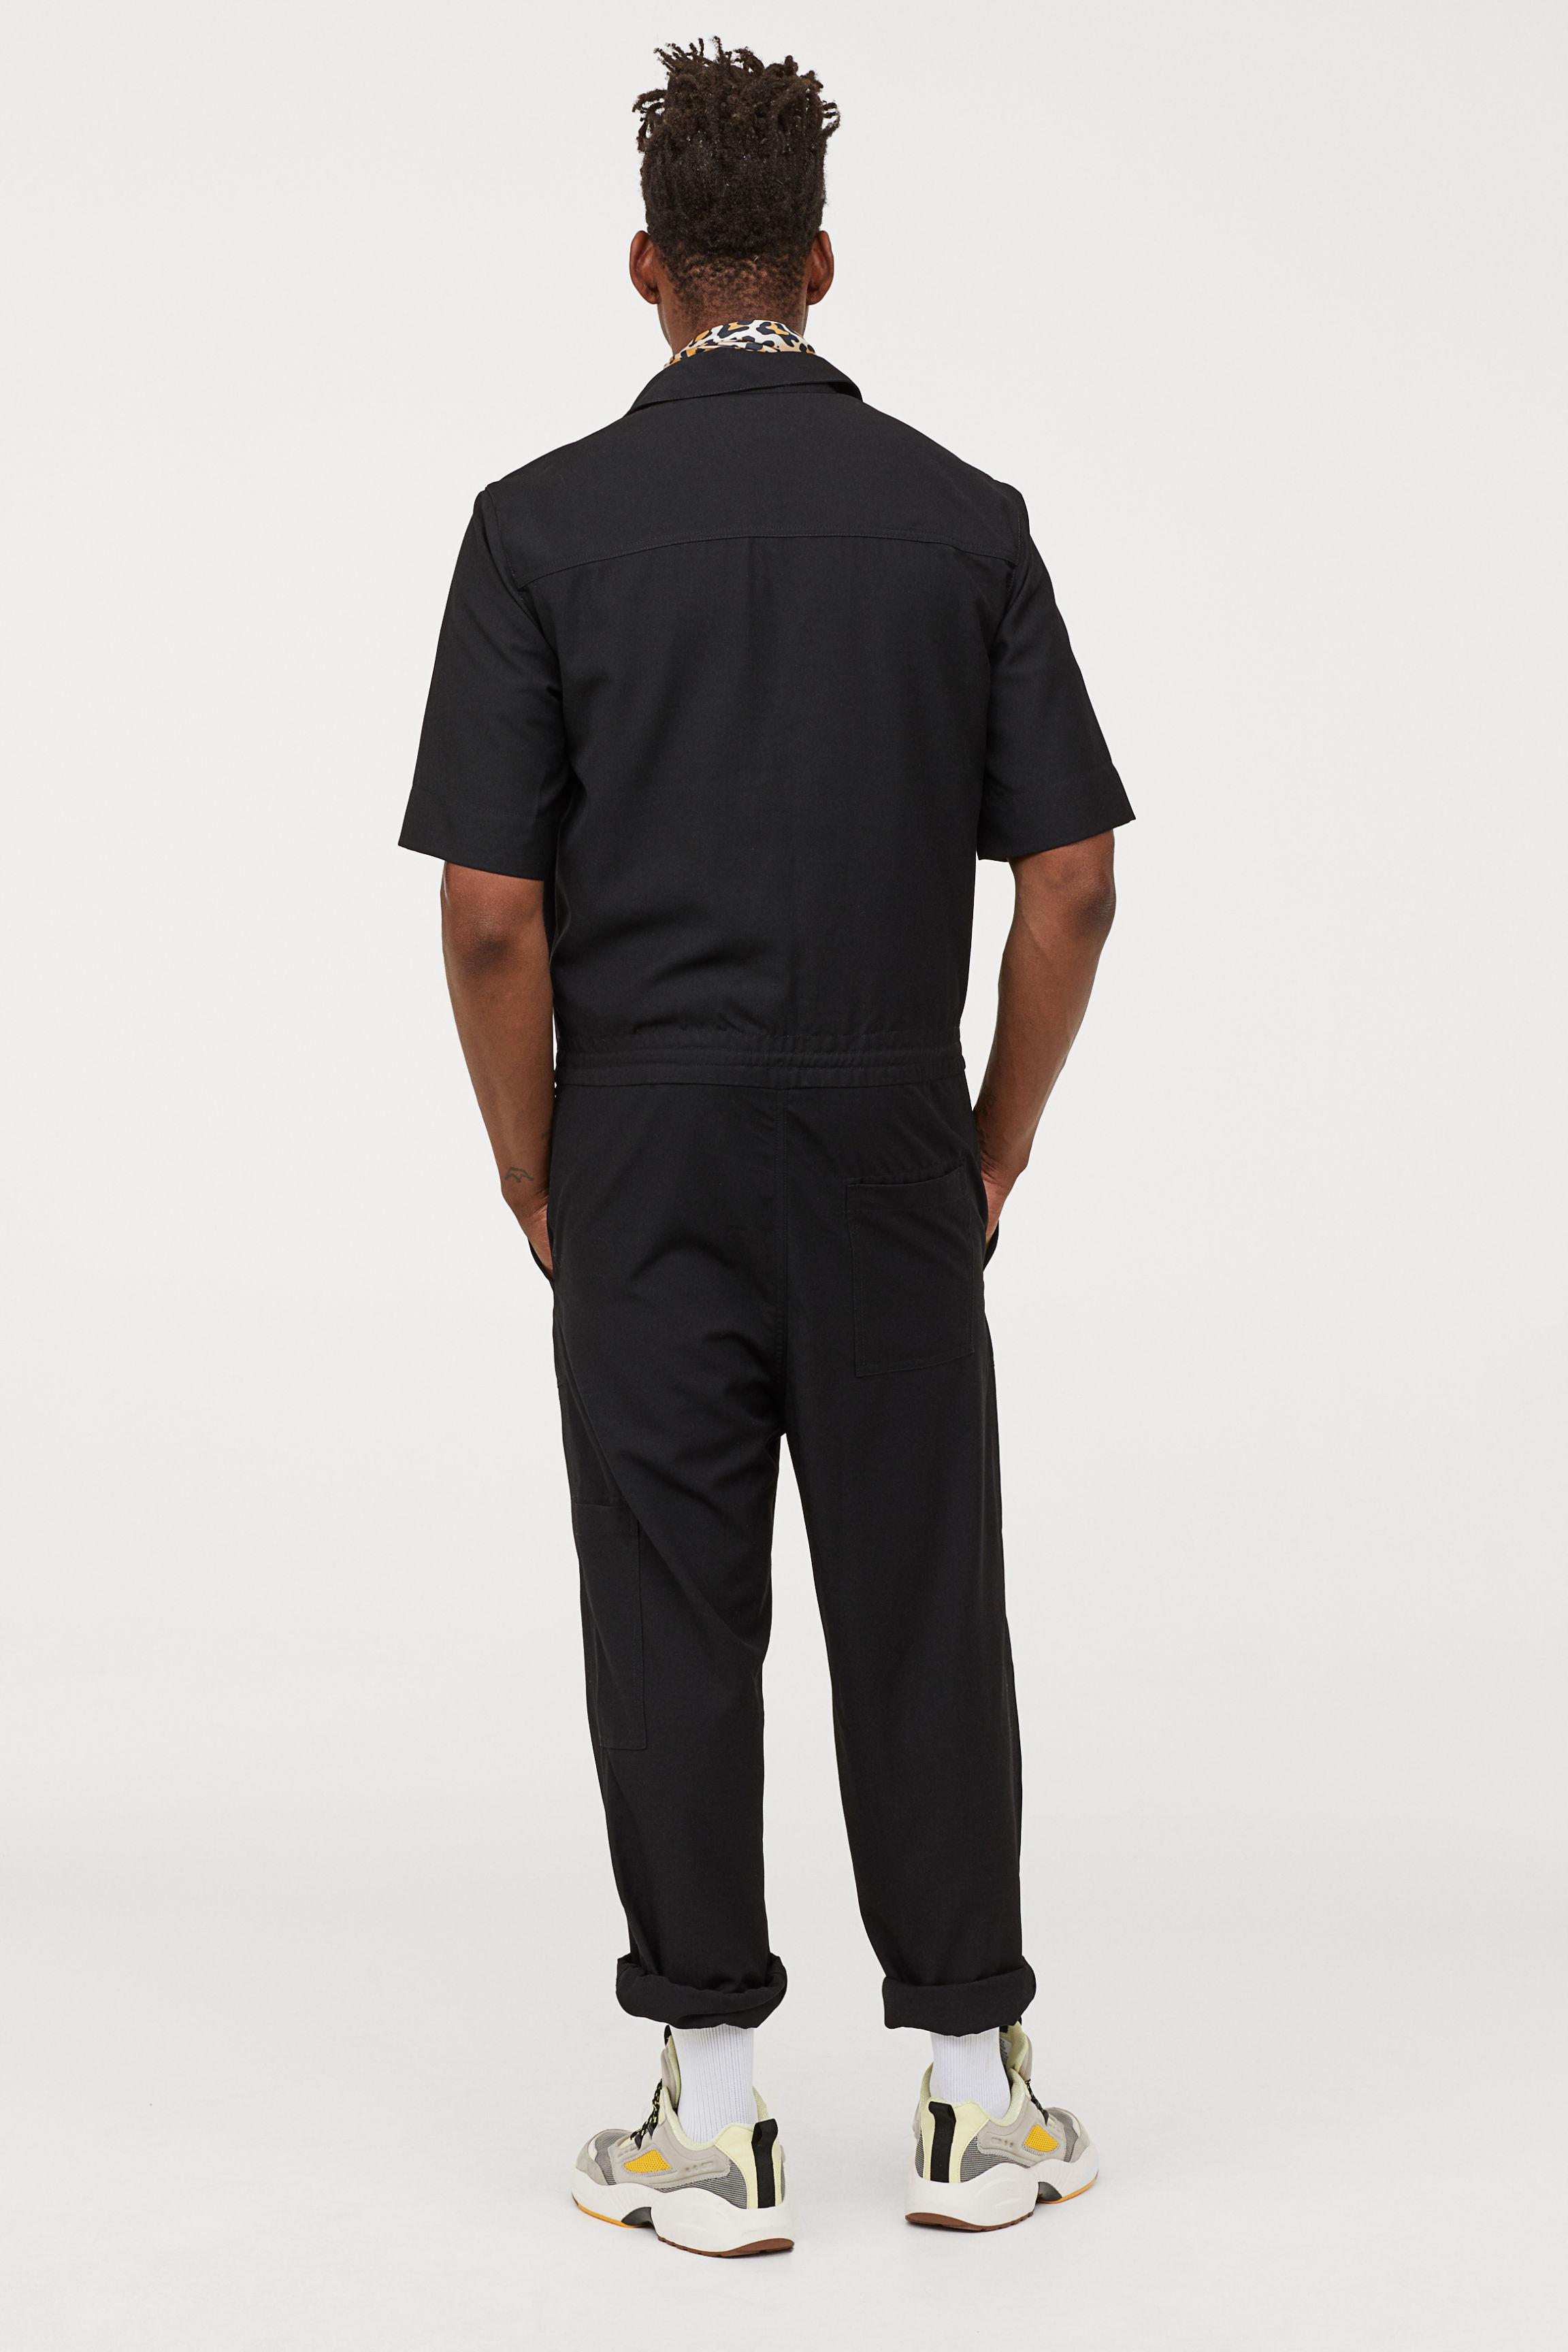 H&M Cotton Short-sleeved Boiler Suit in Black for Men - Lyst